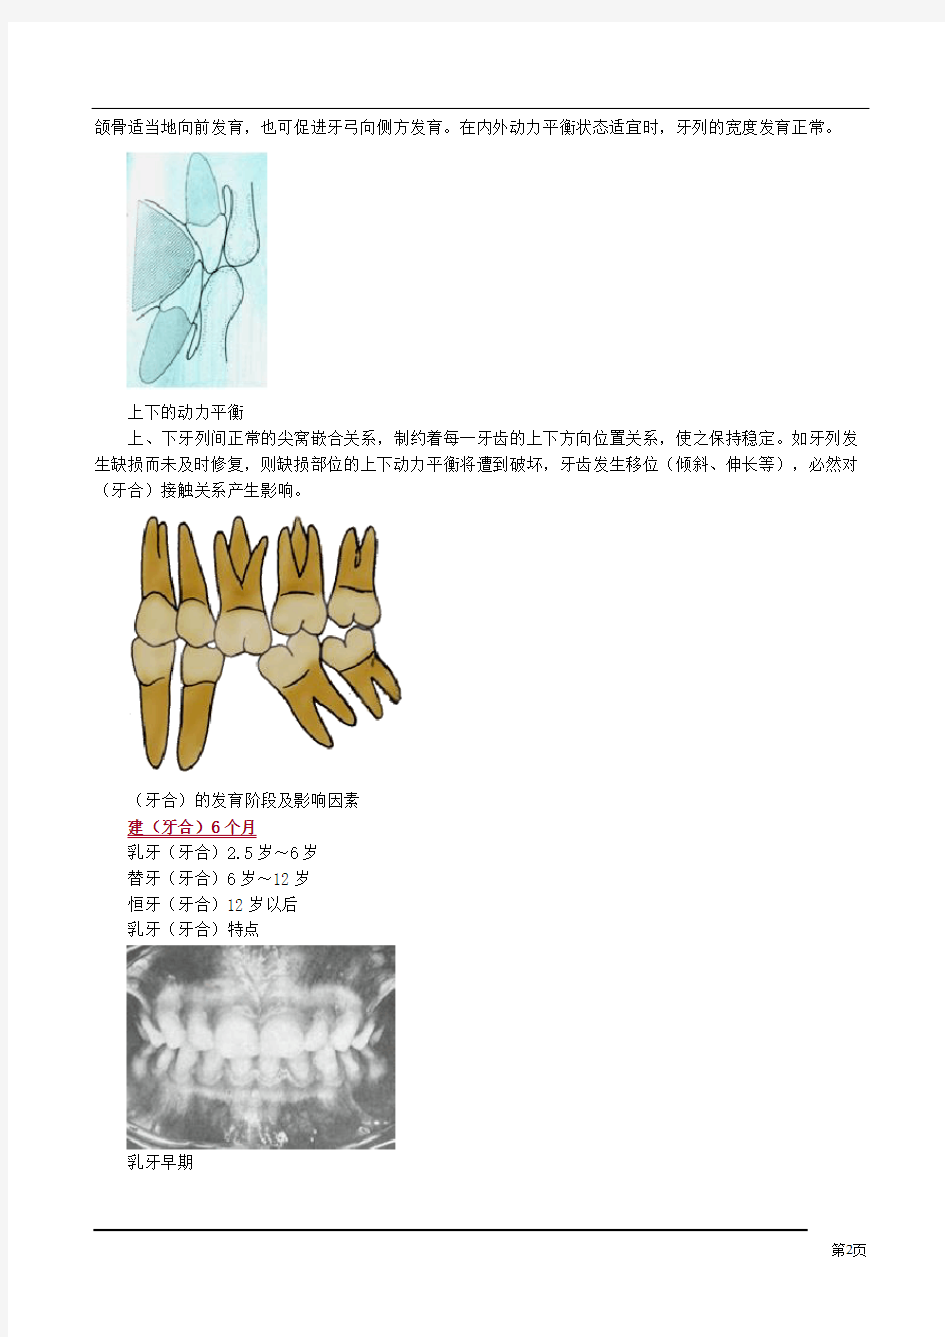 口腔解剖生理学(牙合)与颌位知识点